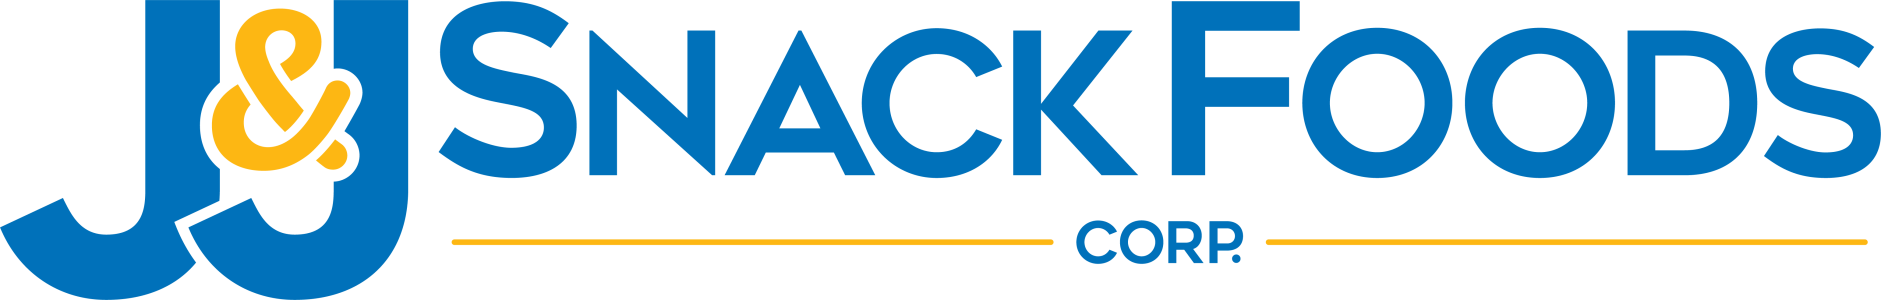 Logotipo de JJ Snack Food Corp